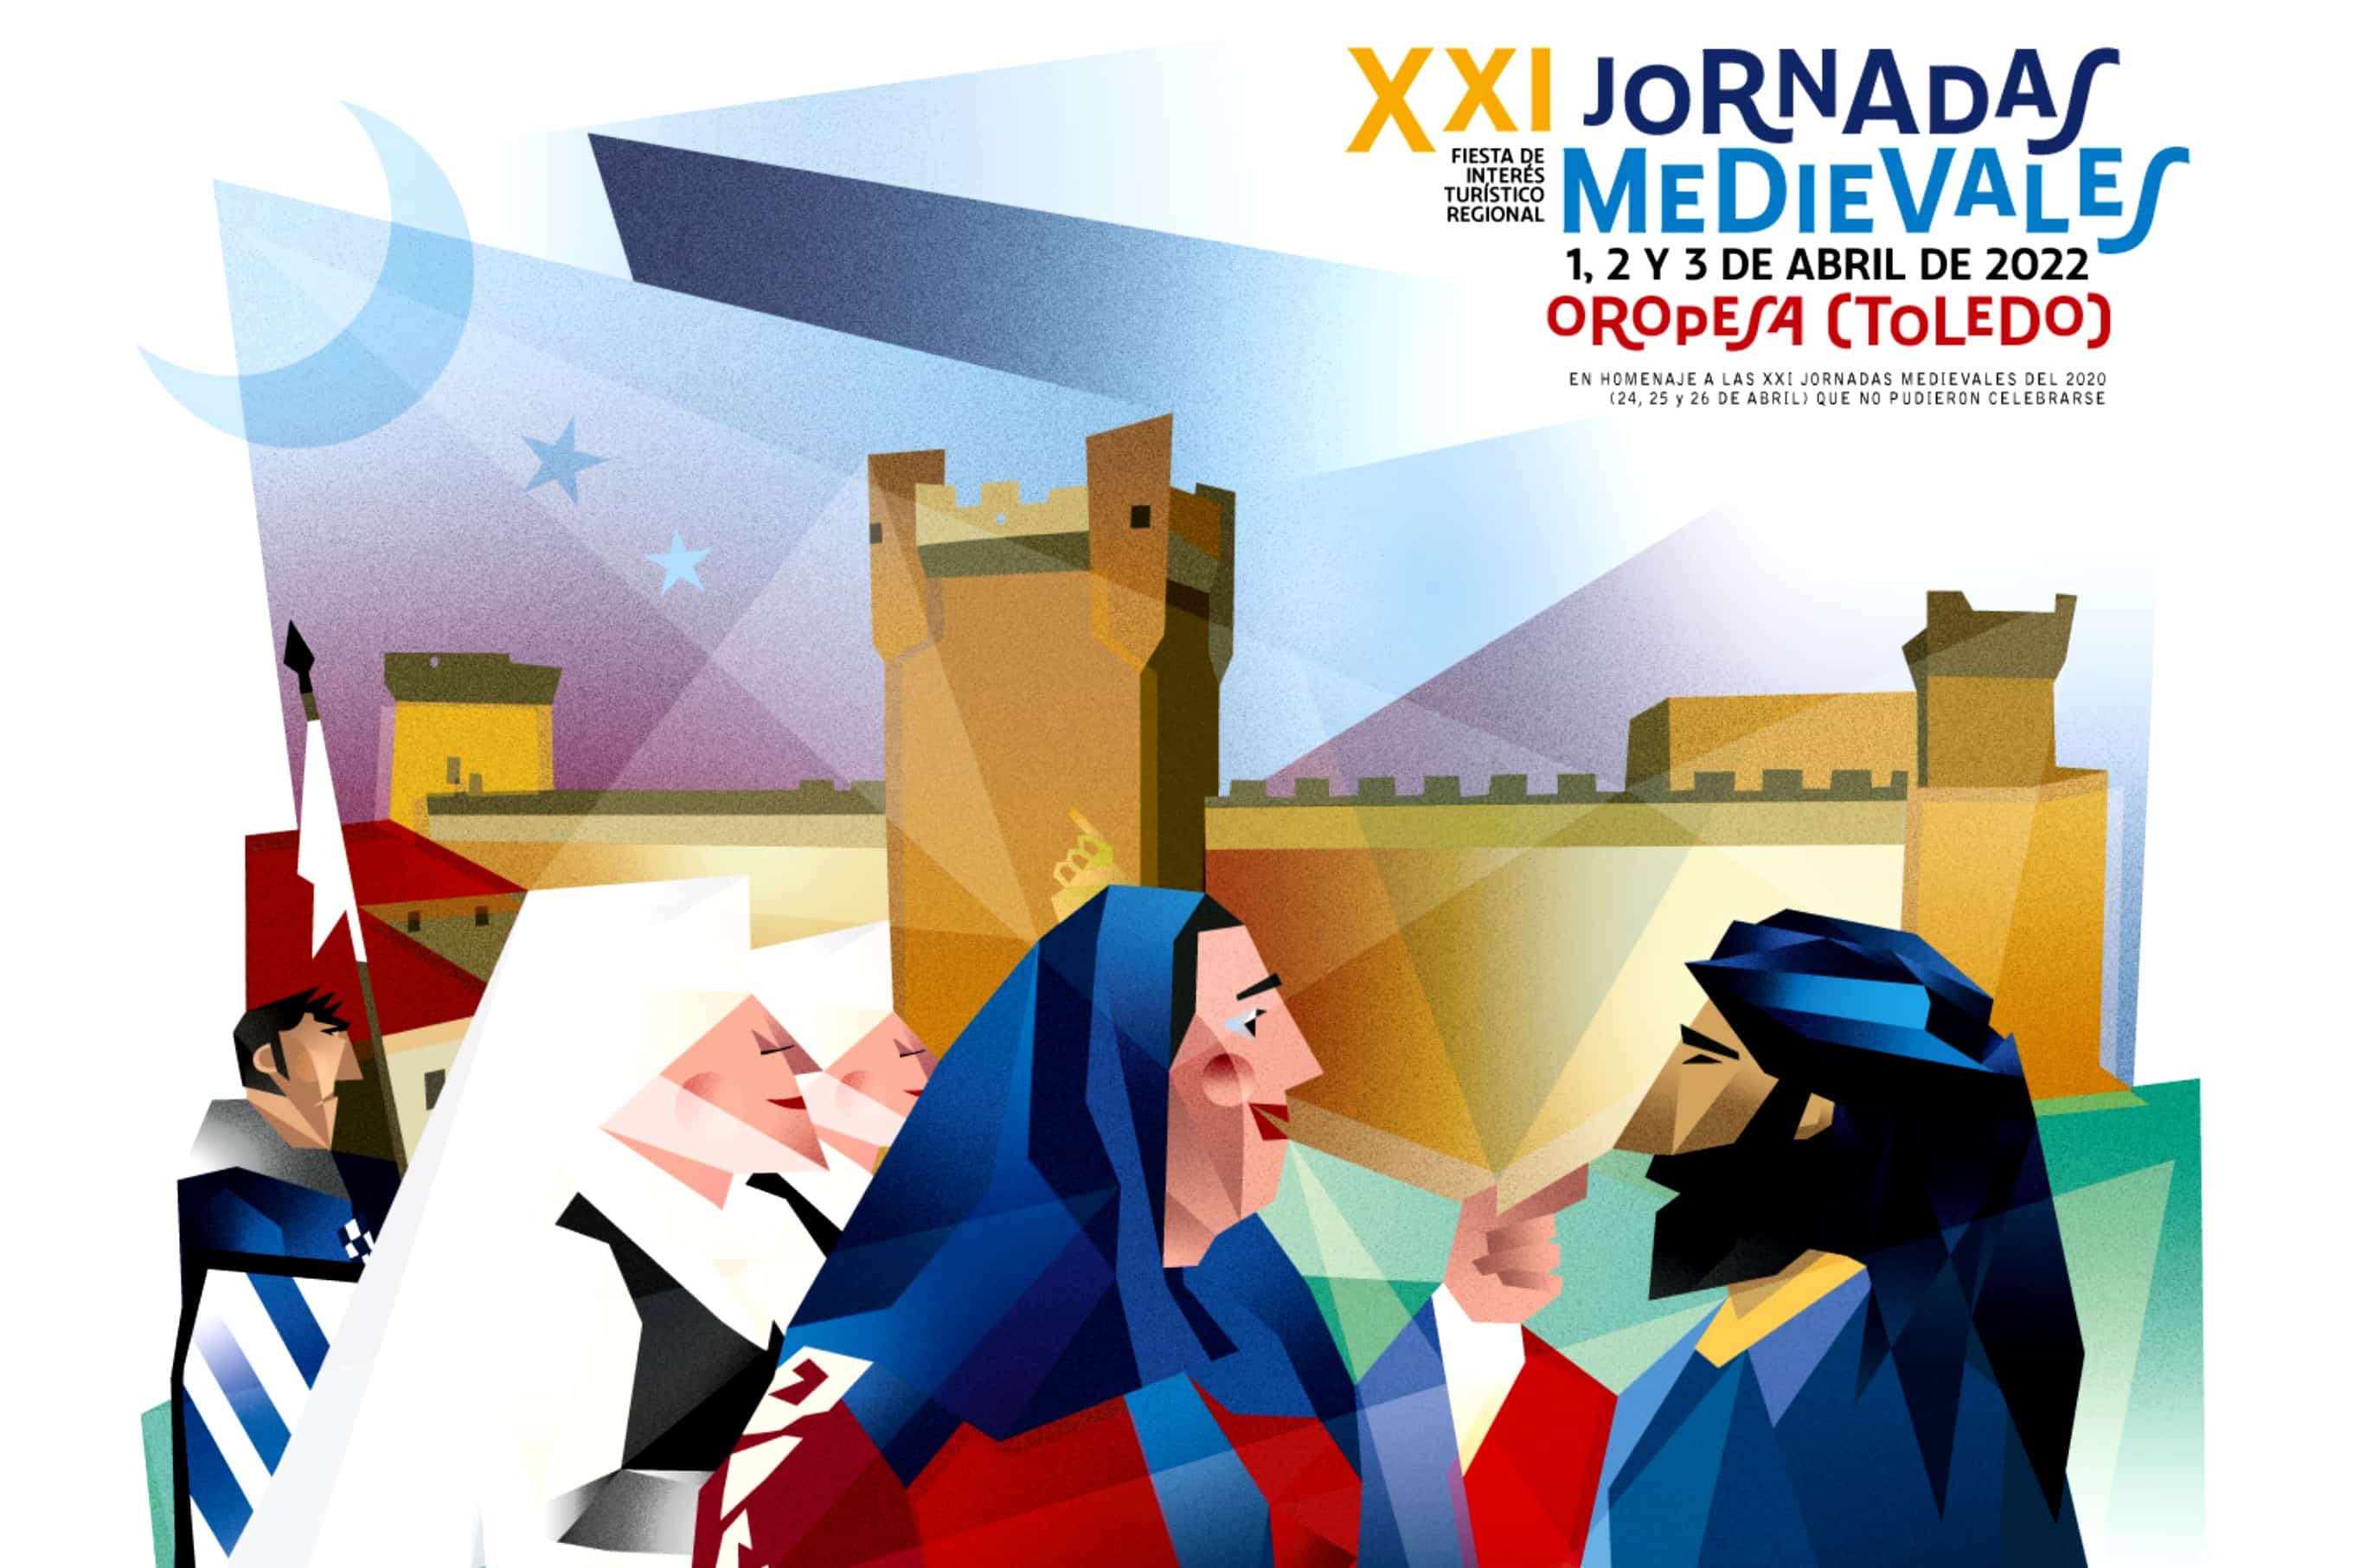 Cartel de las Jornadas Medievales de Oropesa de Toledo 2022